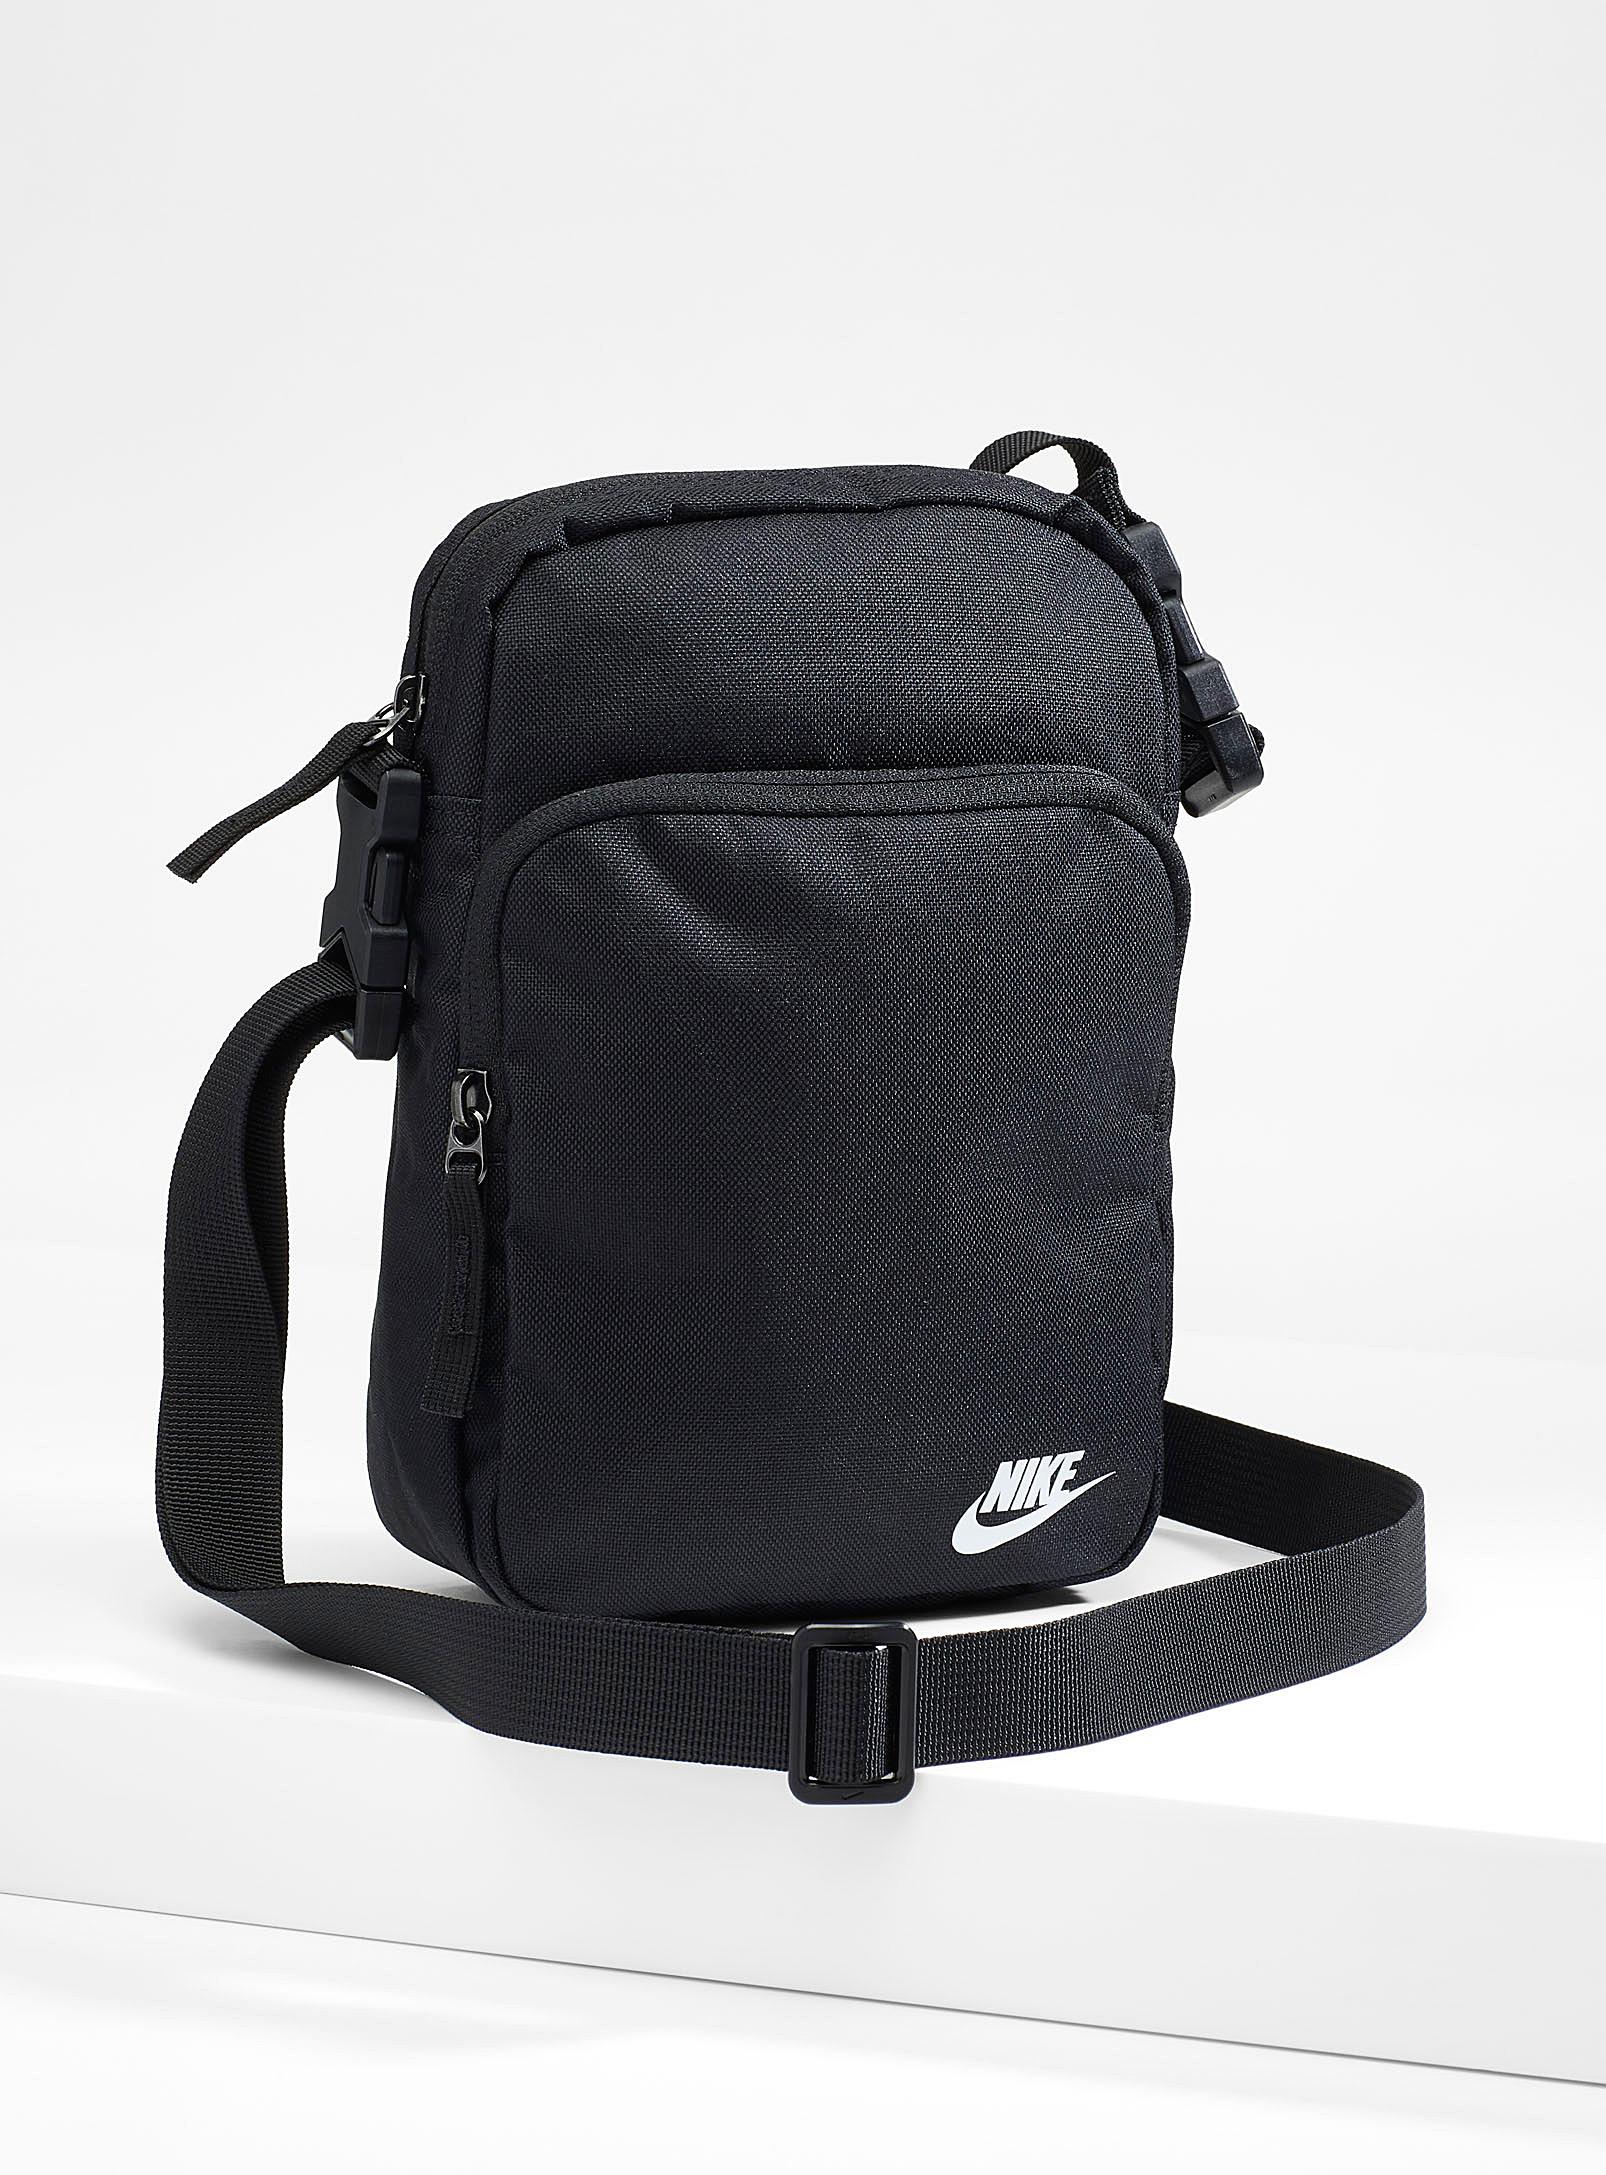 Nike Heritage 2.0 Shoulder Bag in Black for Men - Lyst